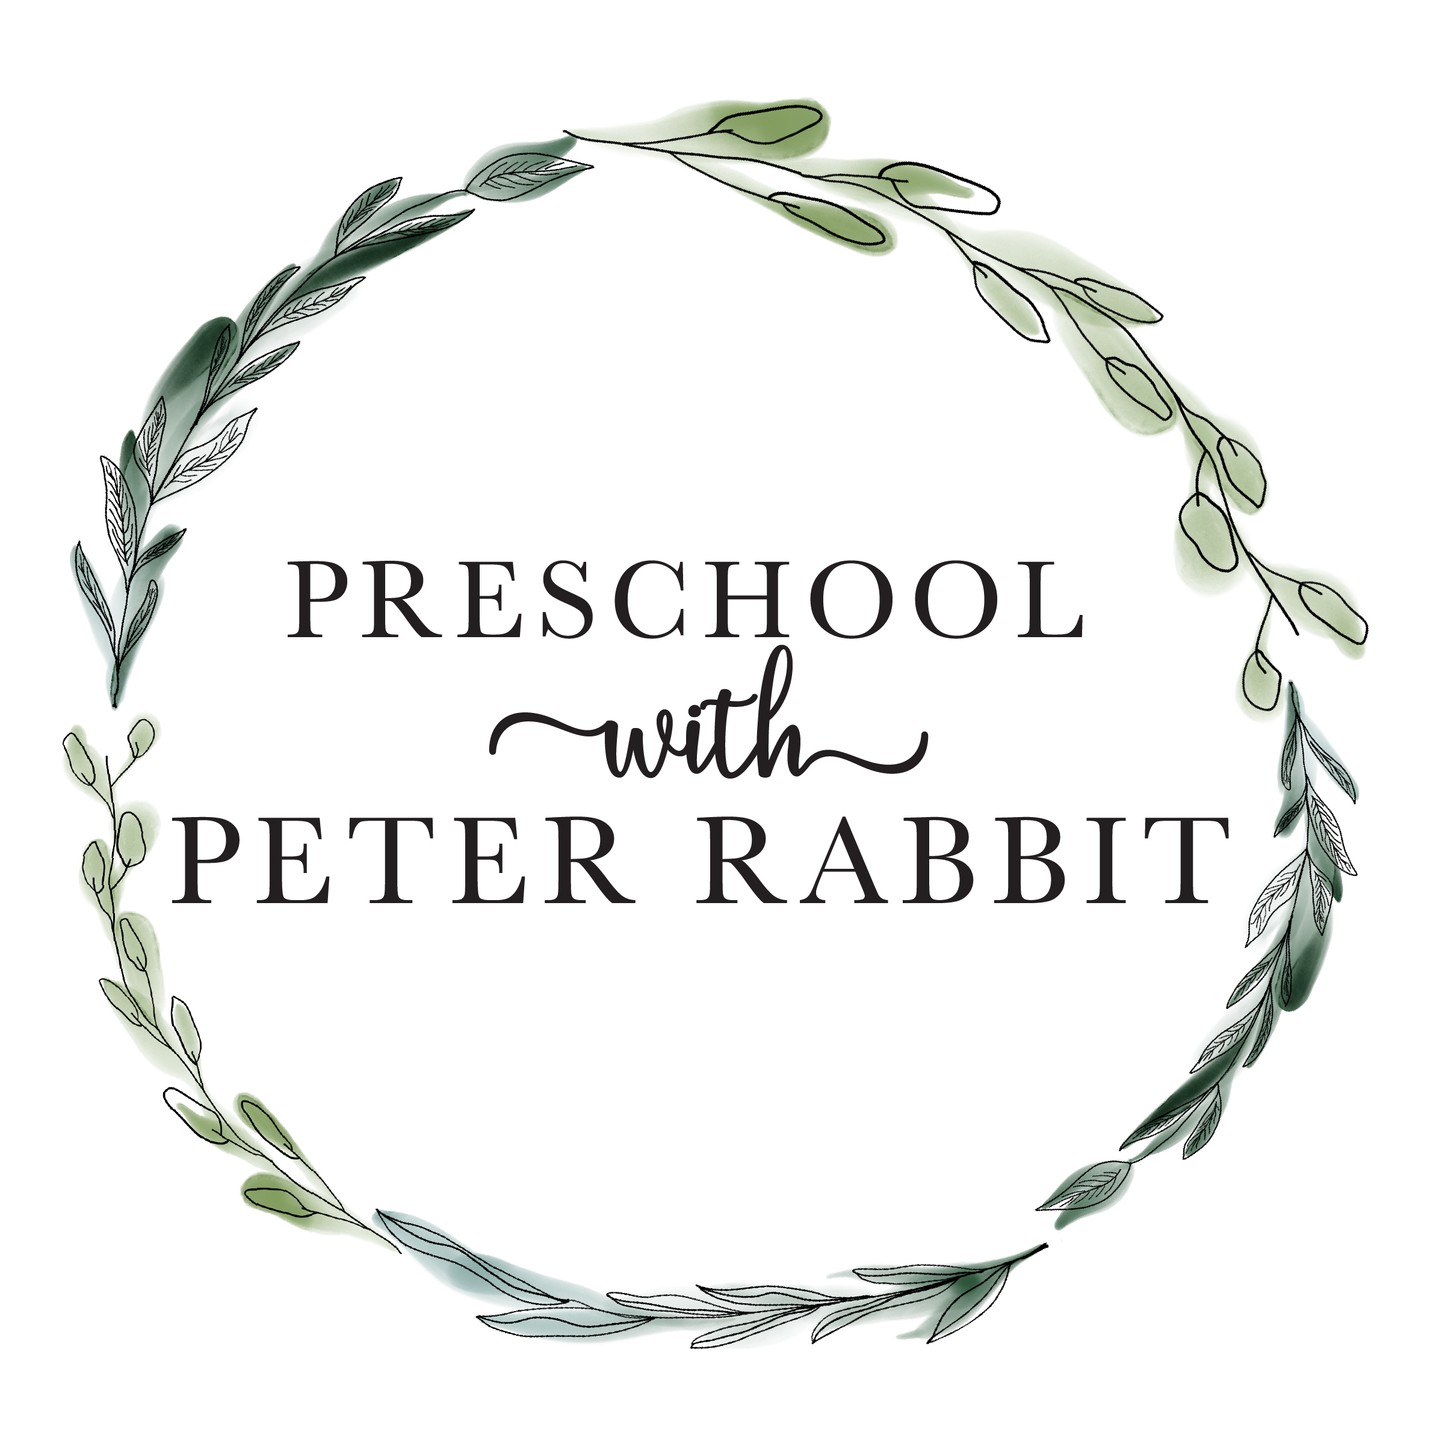 Preschool with Peter Rabbit